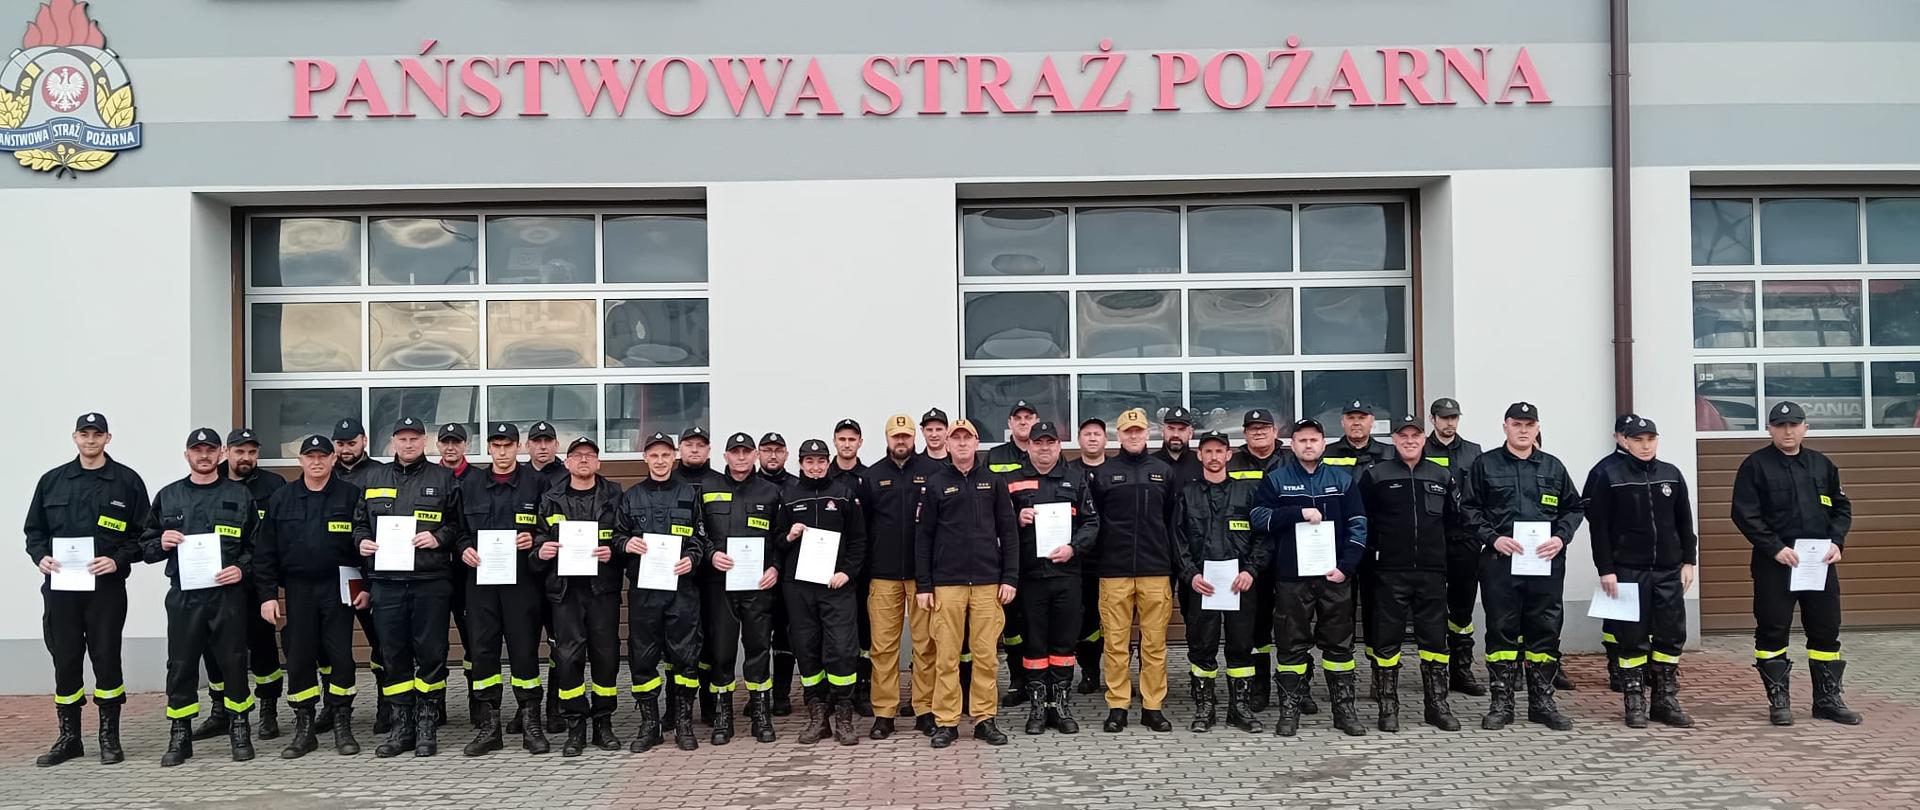 Zdjęcie przedstawia strażaków w ubraniach koszarowych stojących na zbiórce przed budynkiem Jednostki Ratowniczo-Gaśniczej w Lubaczowie.